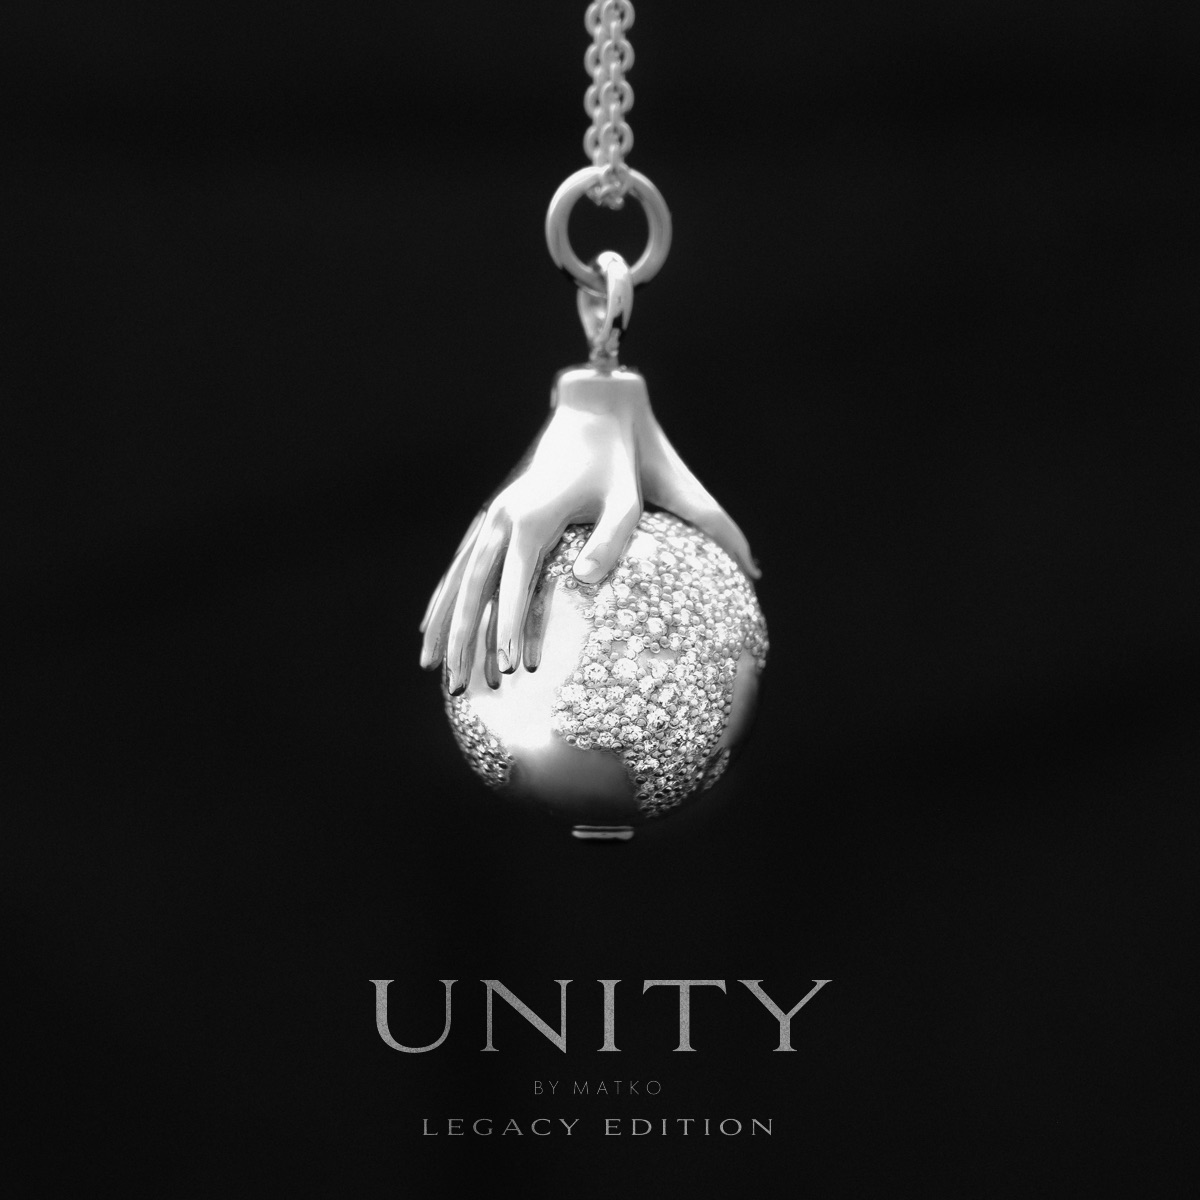 Unity Legacy Edition